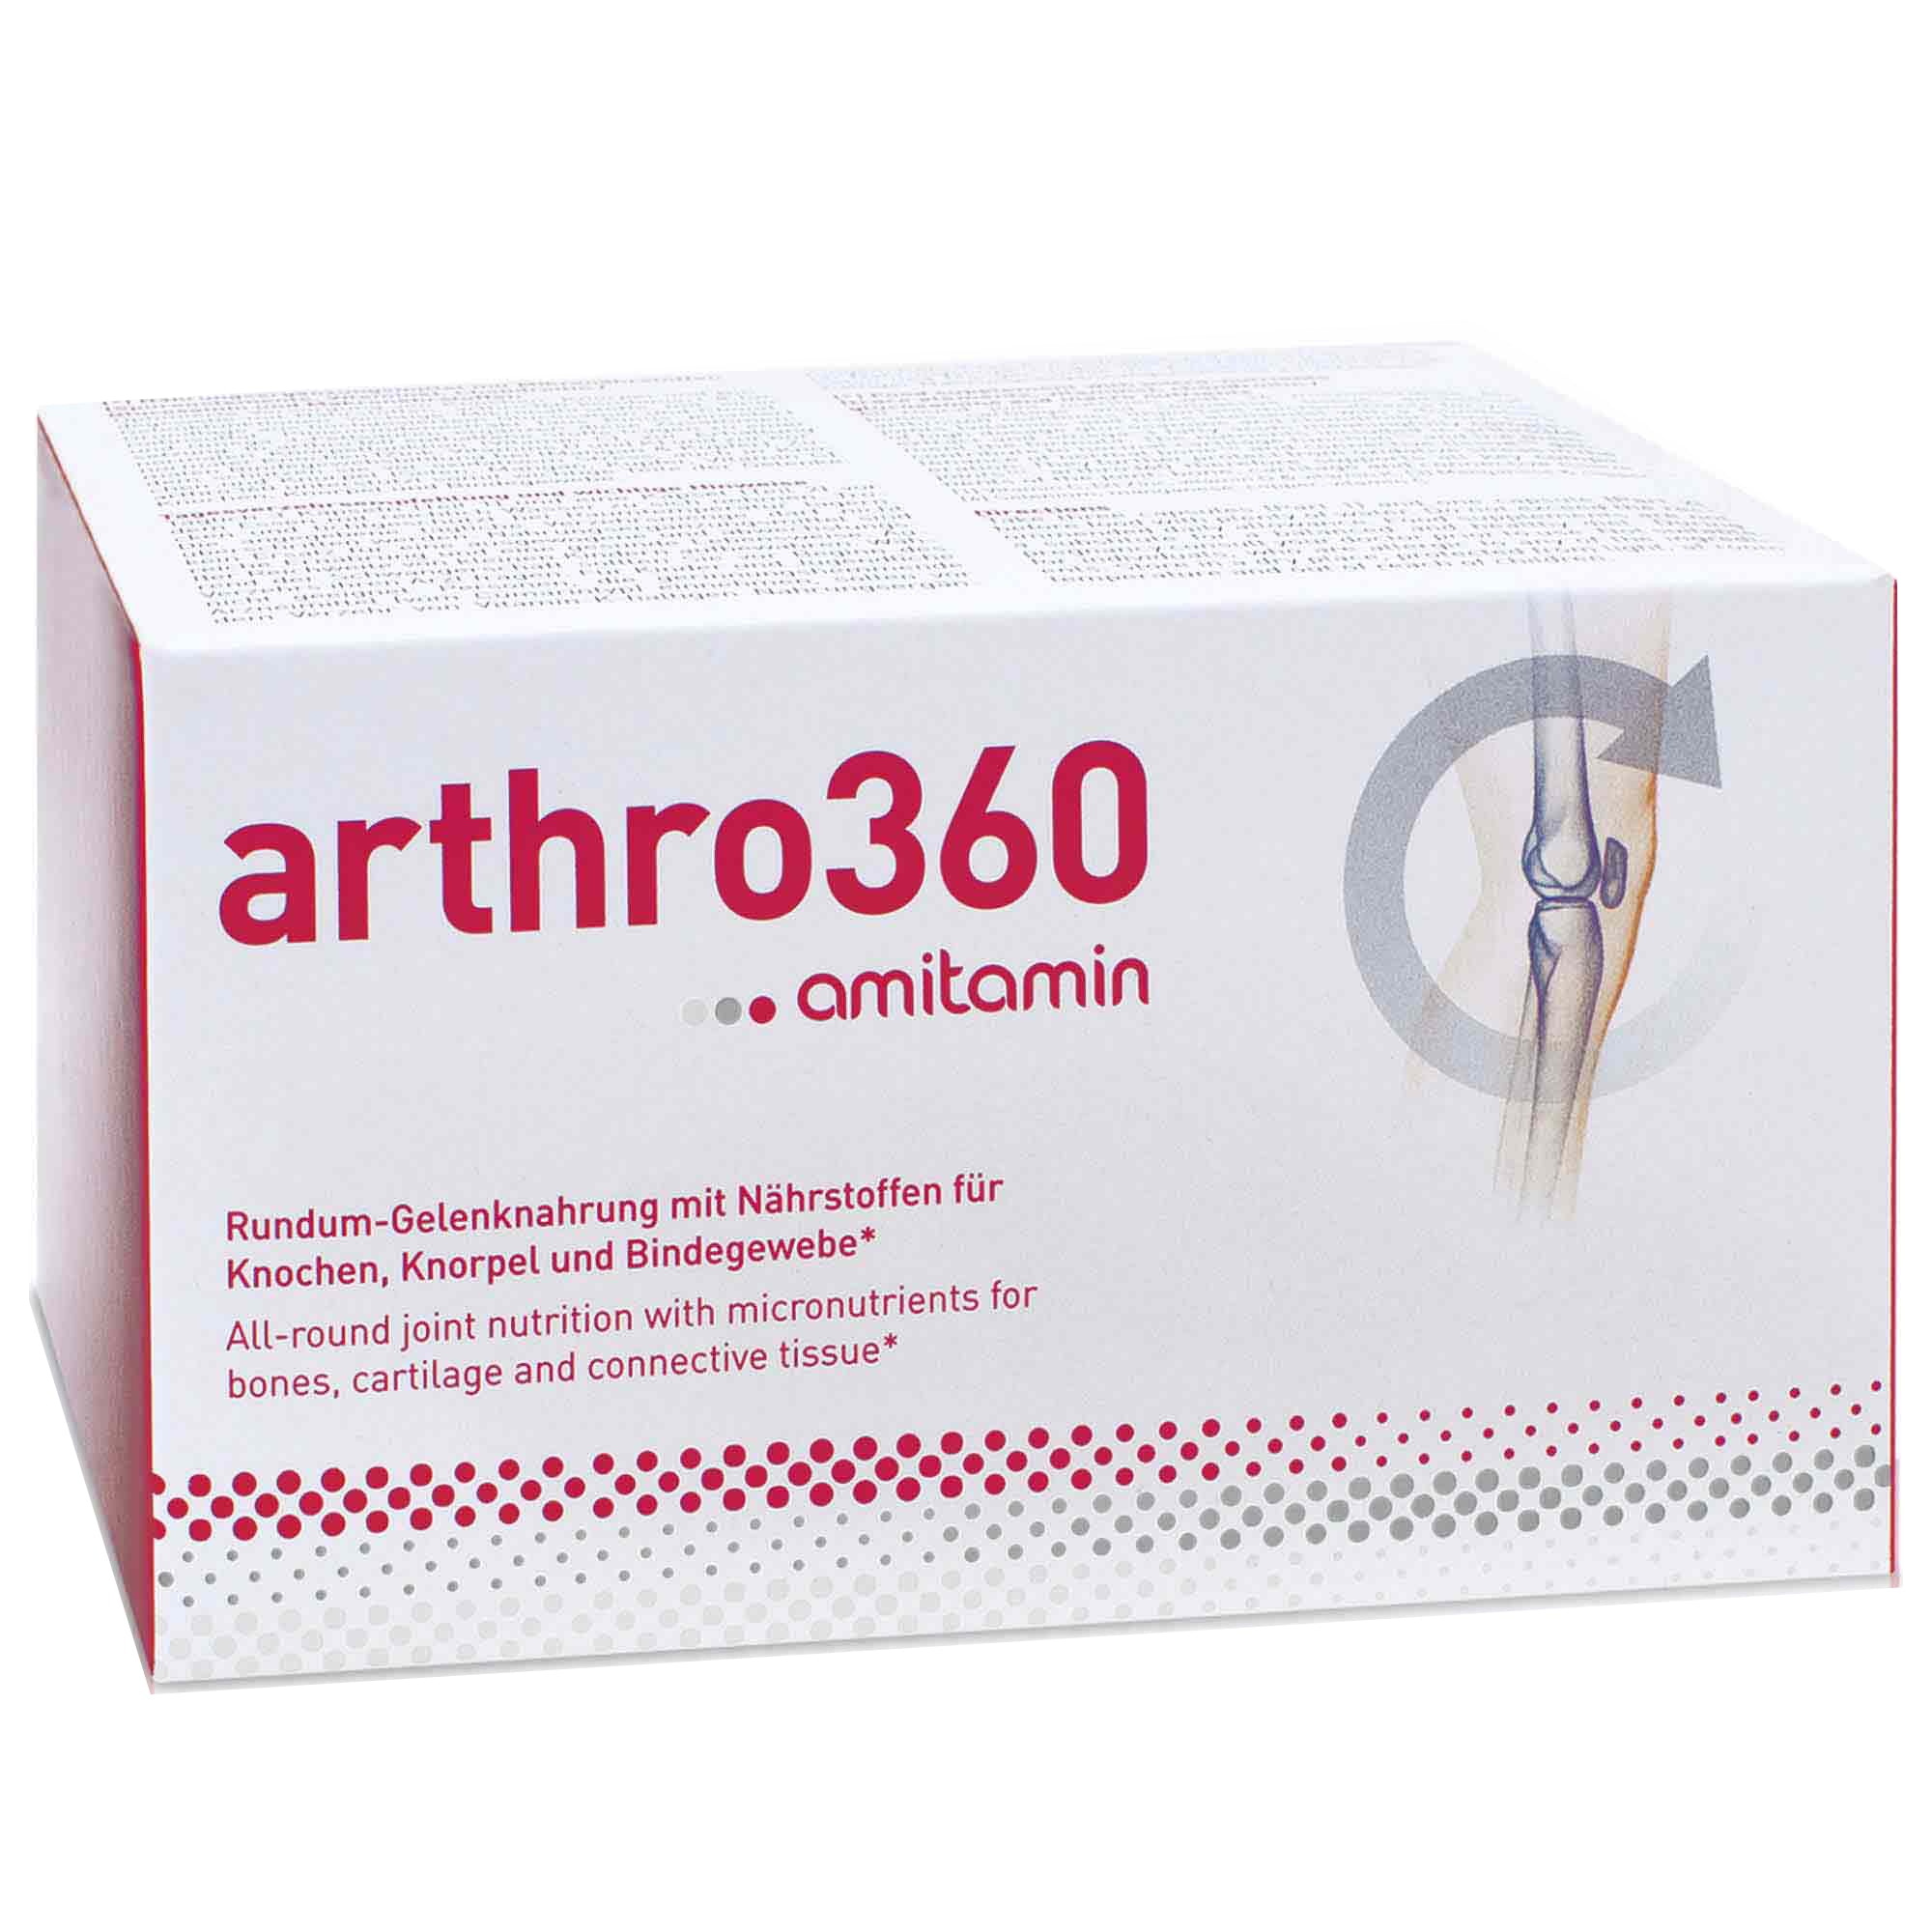 أميتامين® arthro360- تركيبة متطورة للمفاصل والعظام قوية وصحية من ألمانيا (تكفي 30 يومًا)